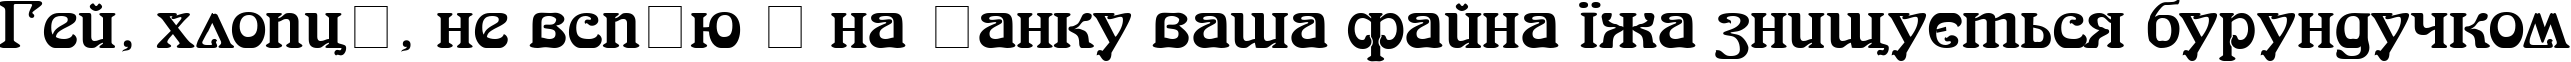 Пример написания шрифтом SkazkaForSerge Medium текста на украинском